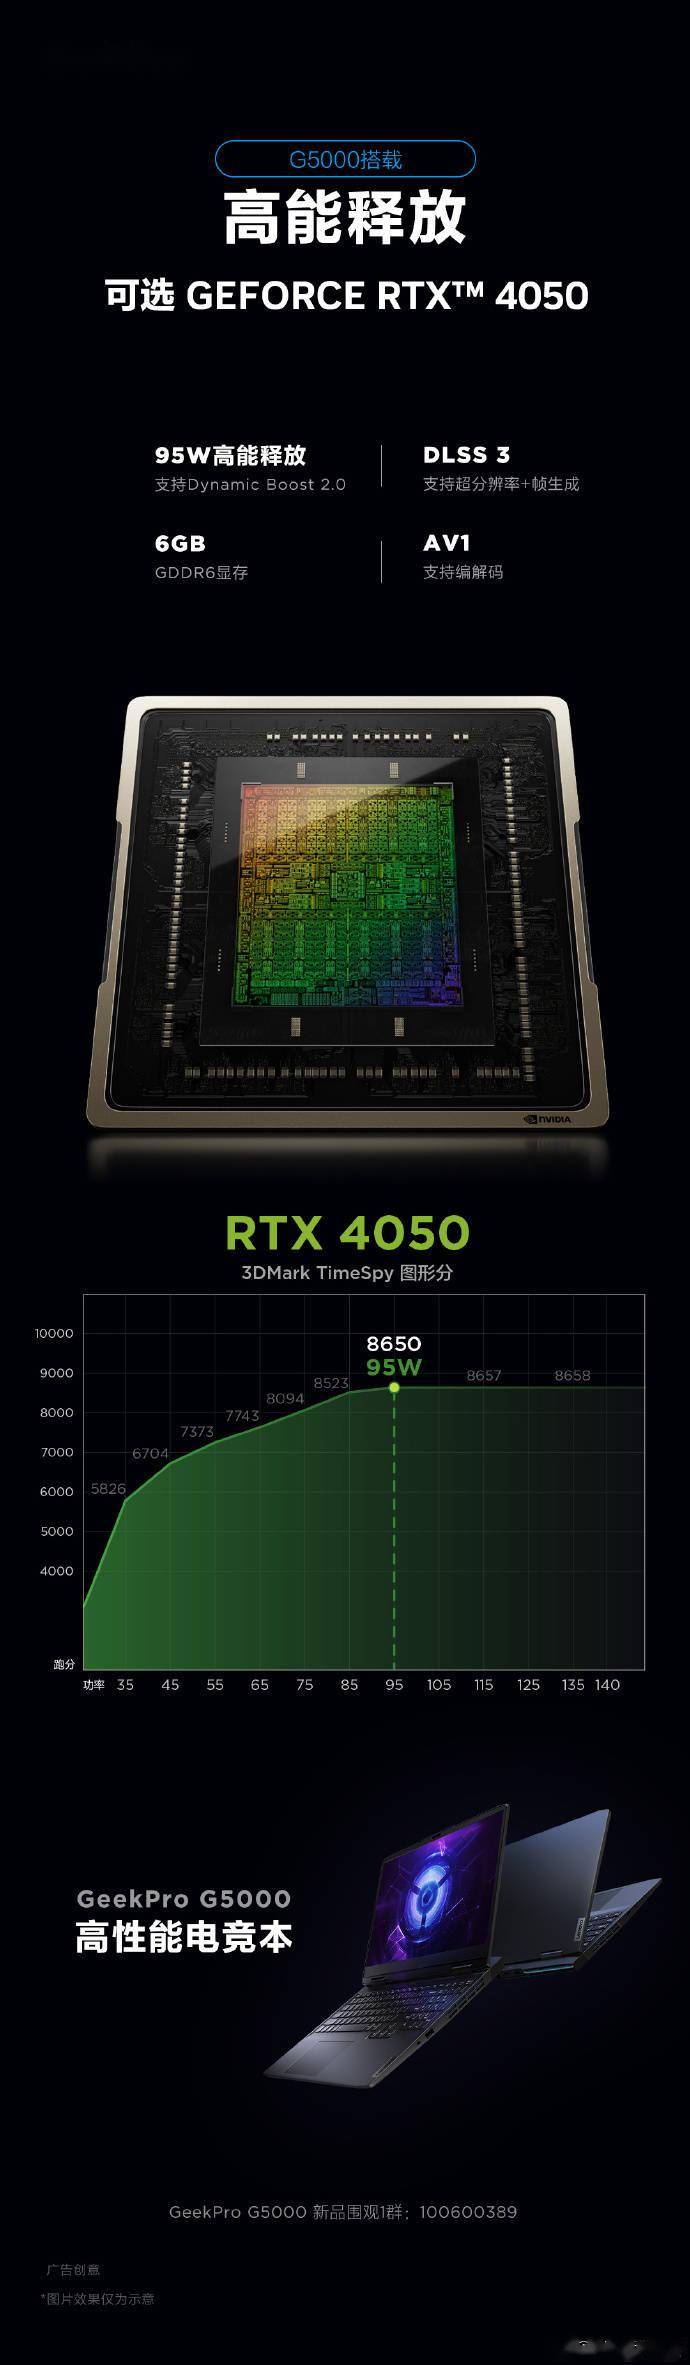 联想最新预热:Geek Pro G5000 游戏本将搭载 RTX 4050 独显